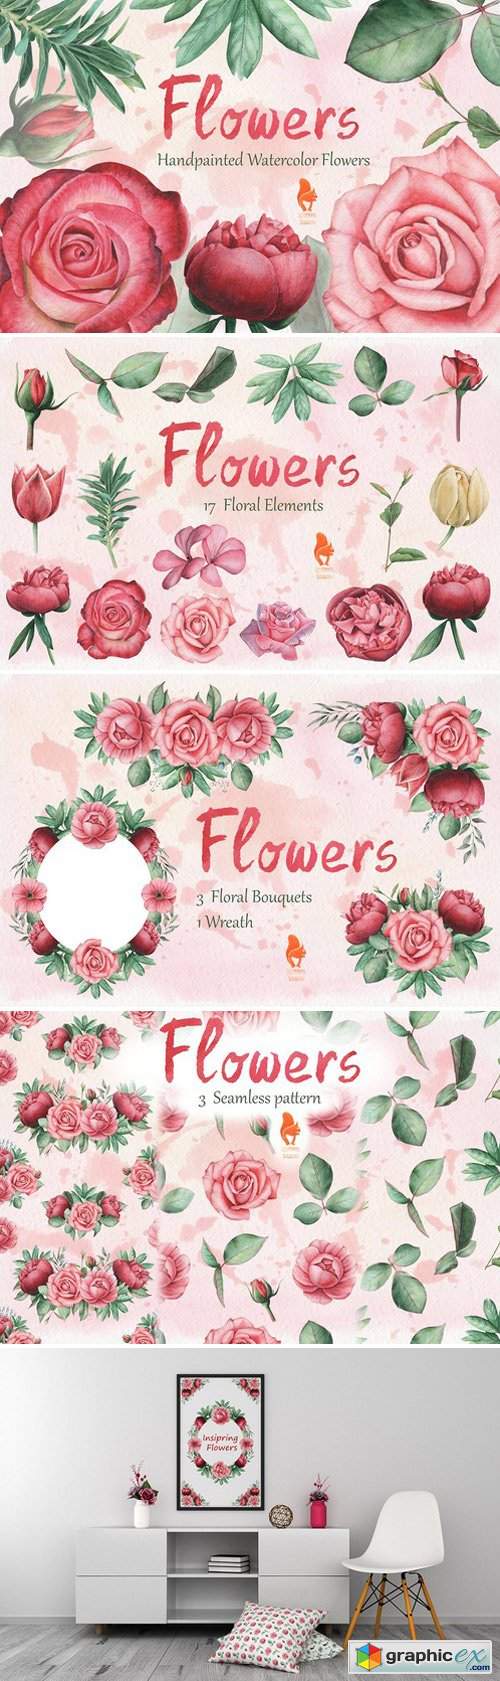 Flowers, Handpainted Watercolor